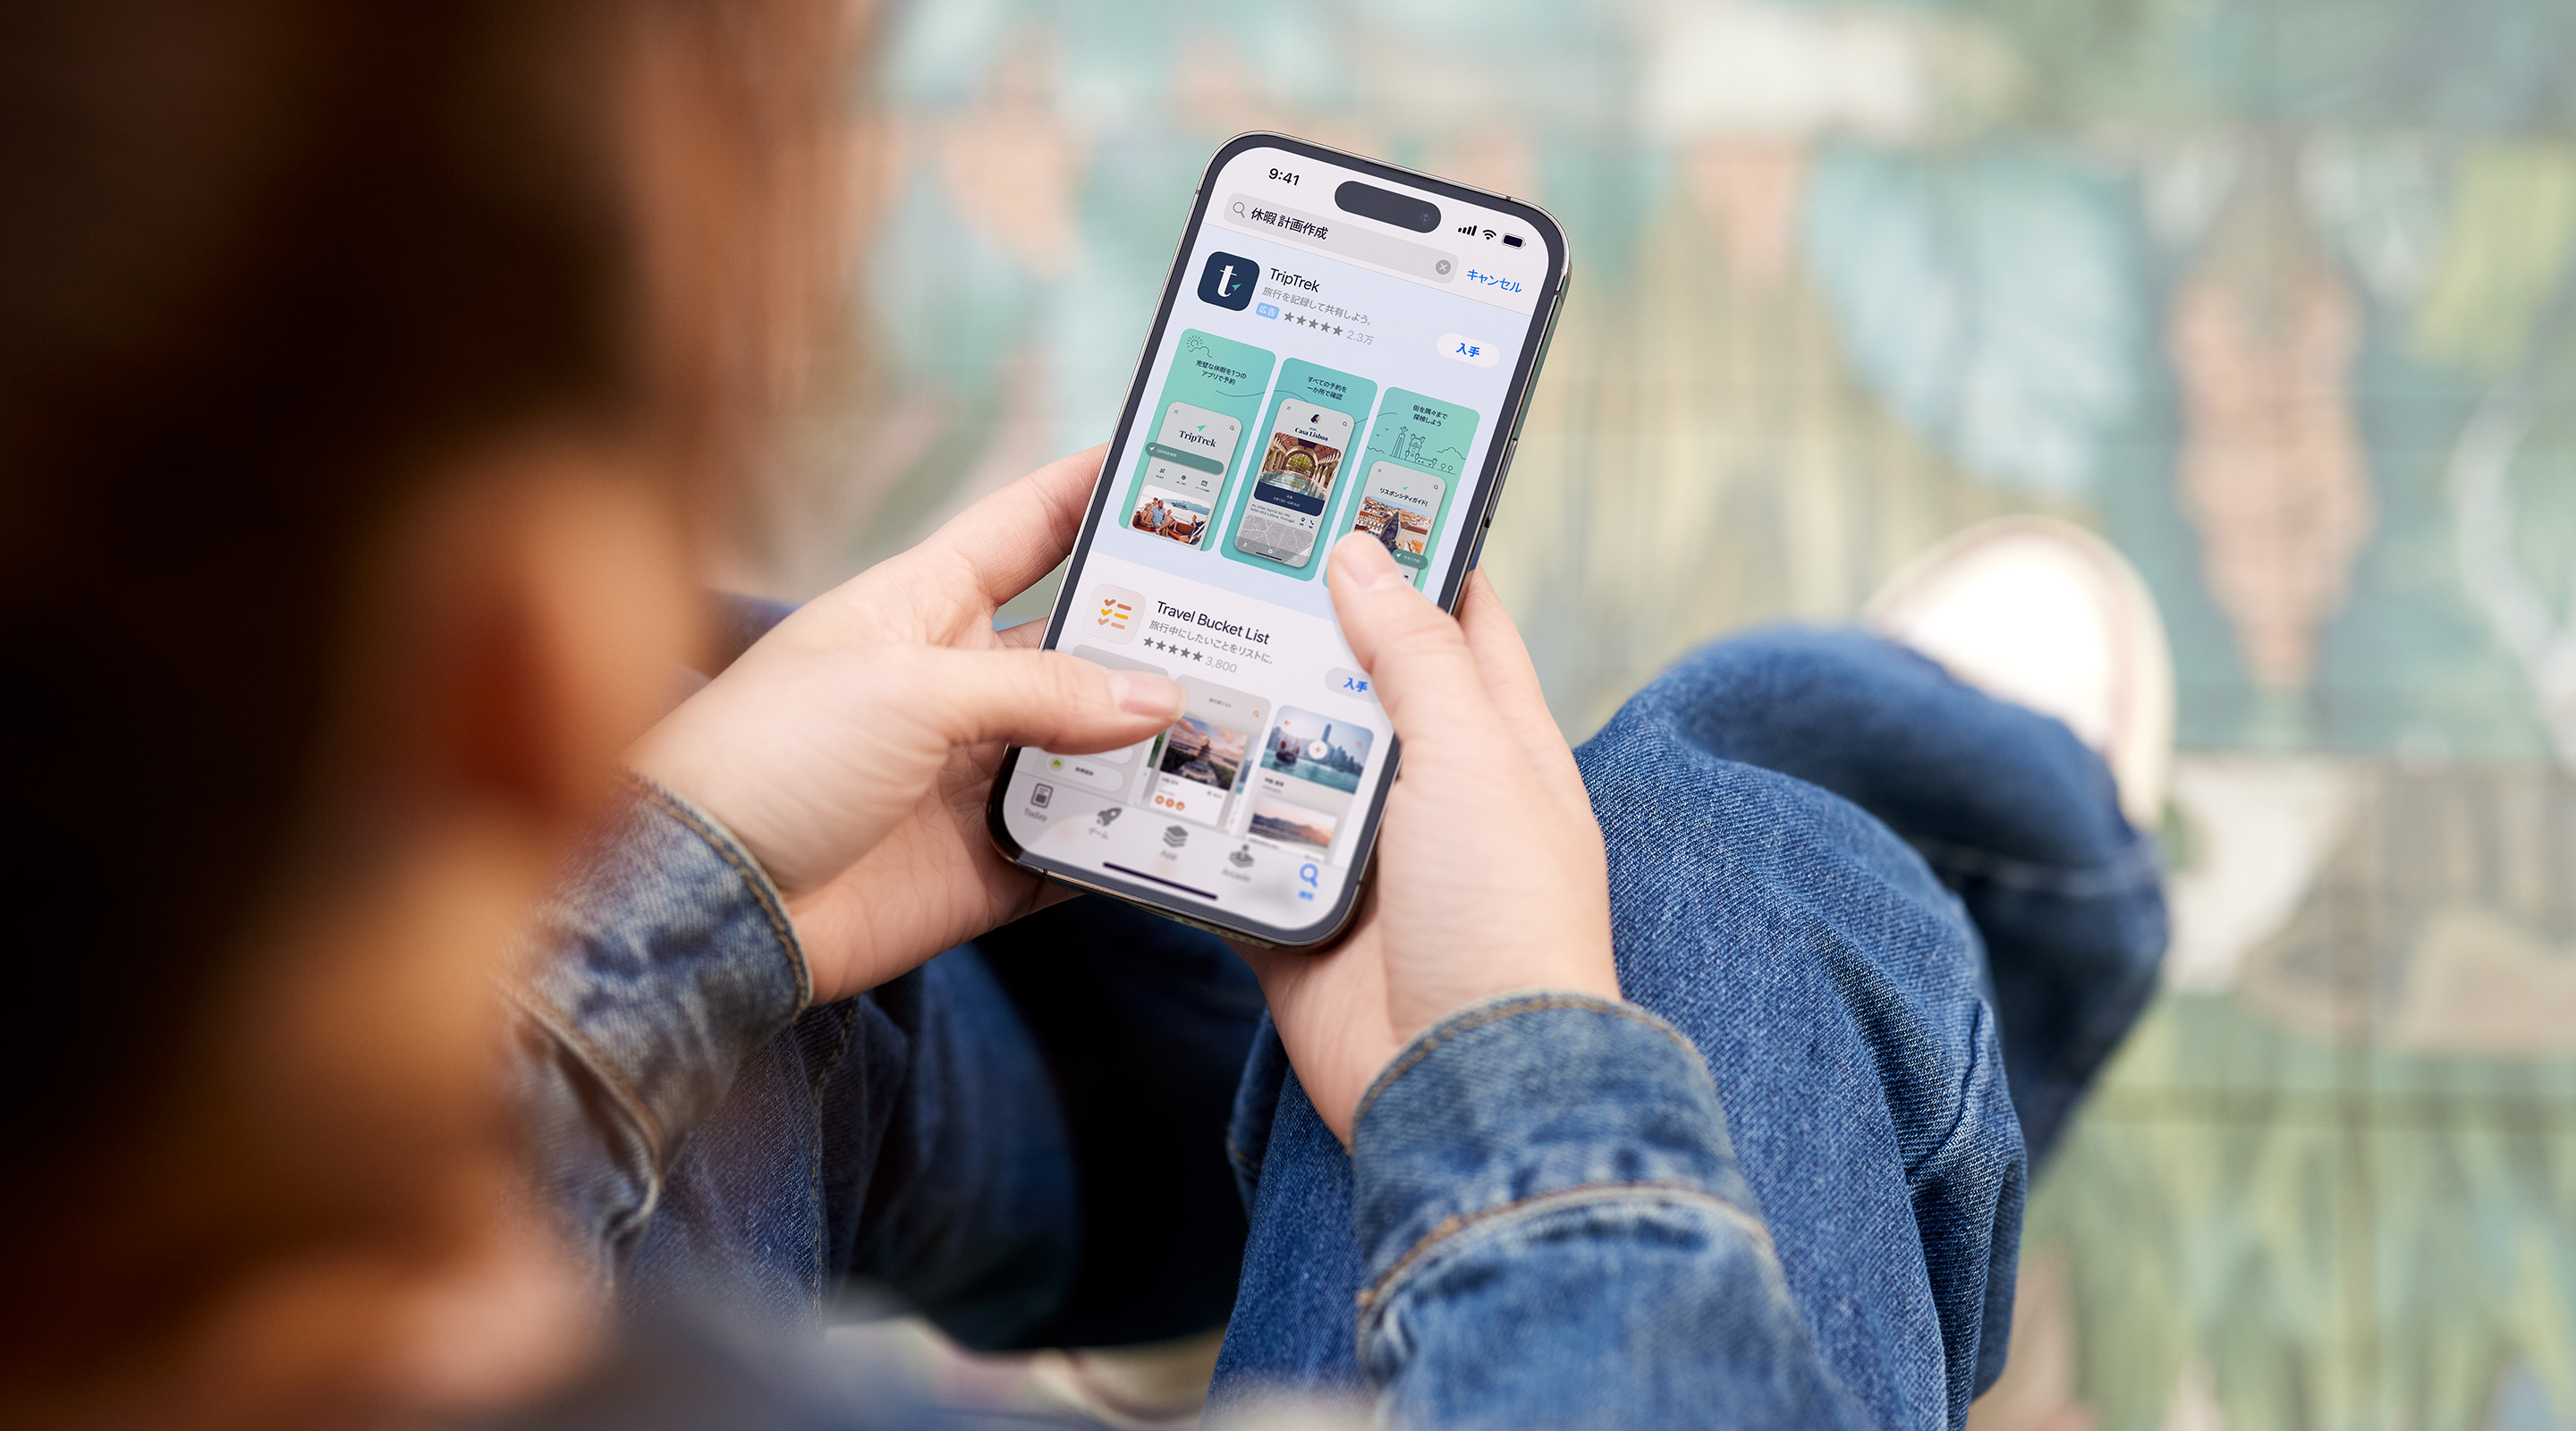 両手でiPhoneを持っている様子。App StoreでサンプルアプリのTripTrekの検索結果広告が表示され、検索ボックスに「vacation planner」（バケーションプランナー）という用語が入力されている。